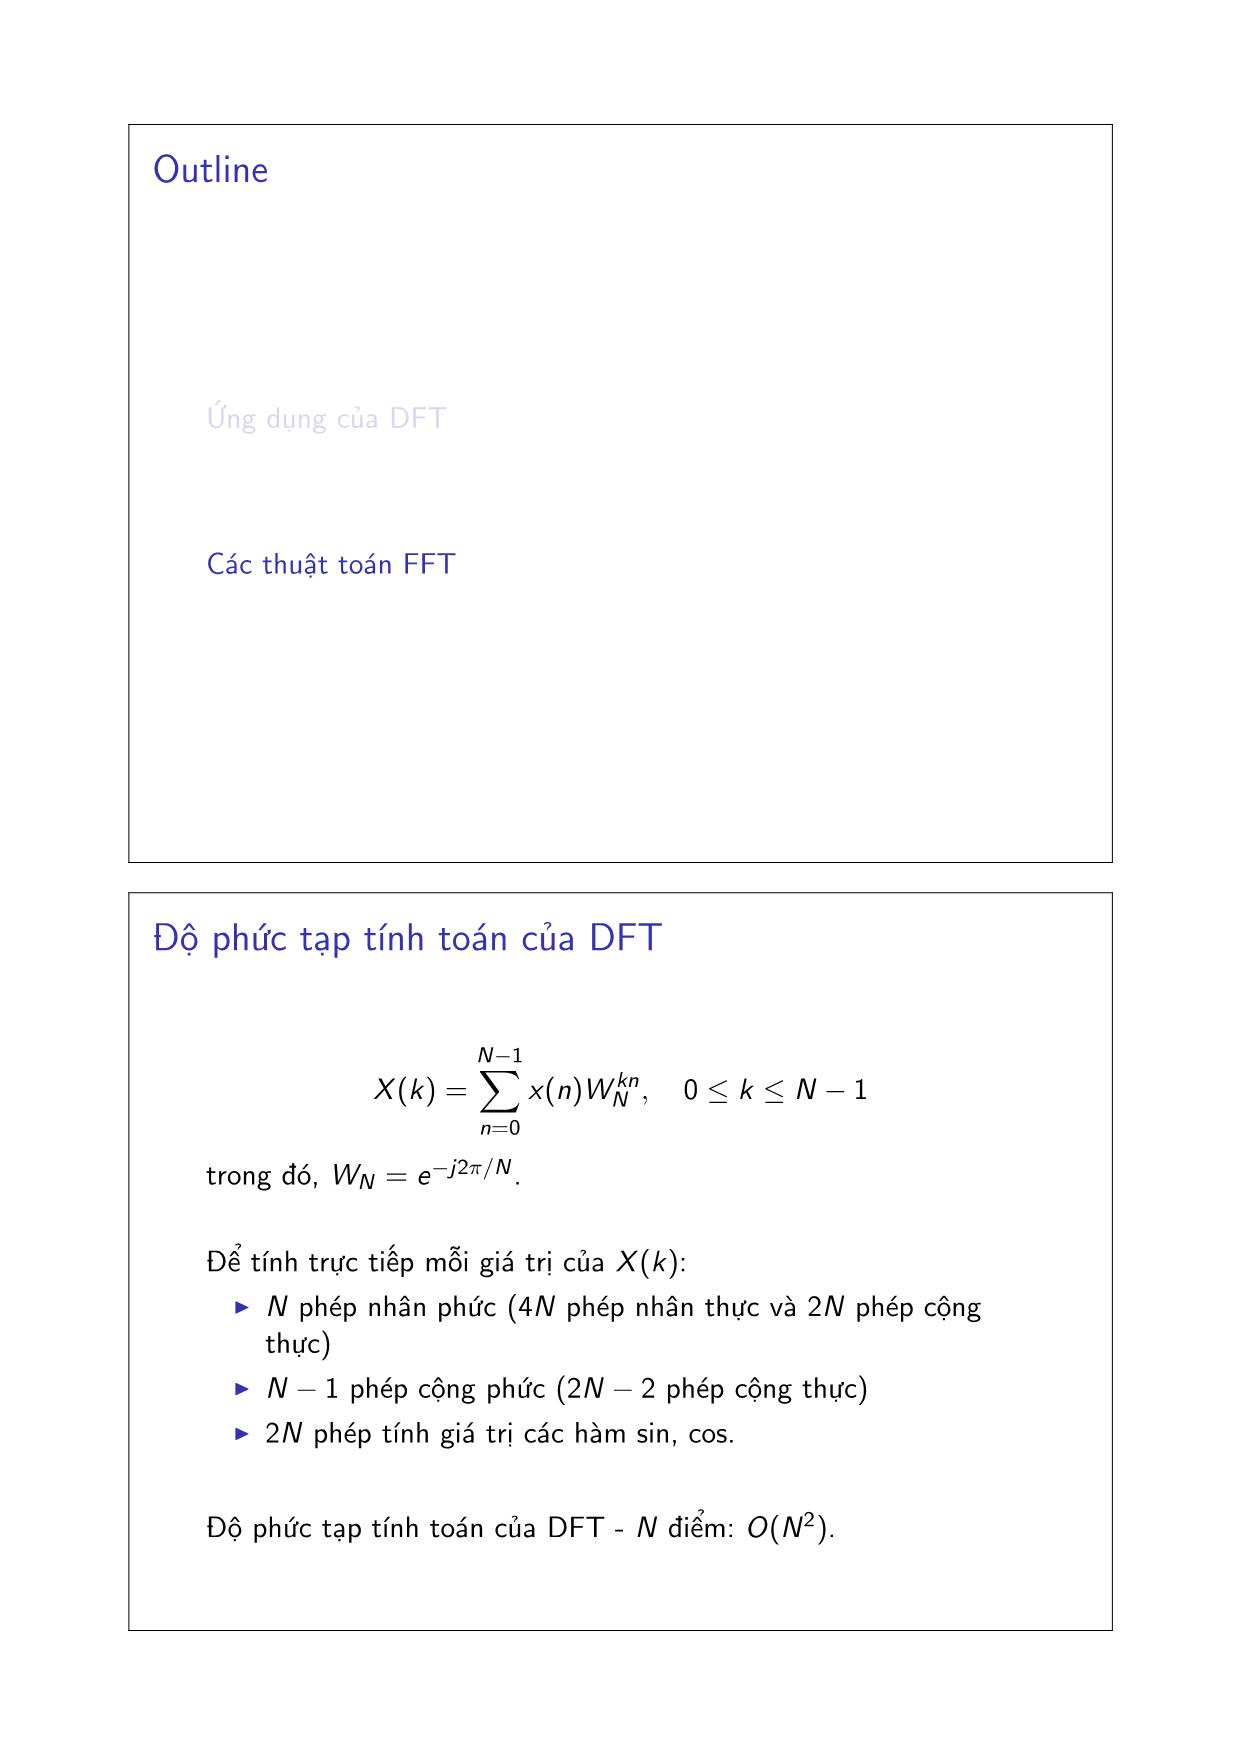 Bài giảng Xử lý tín hiệu số - Chương 3: Các thuật toán FFT và ứng dụng - Đặng Quang Hiếu trang 4